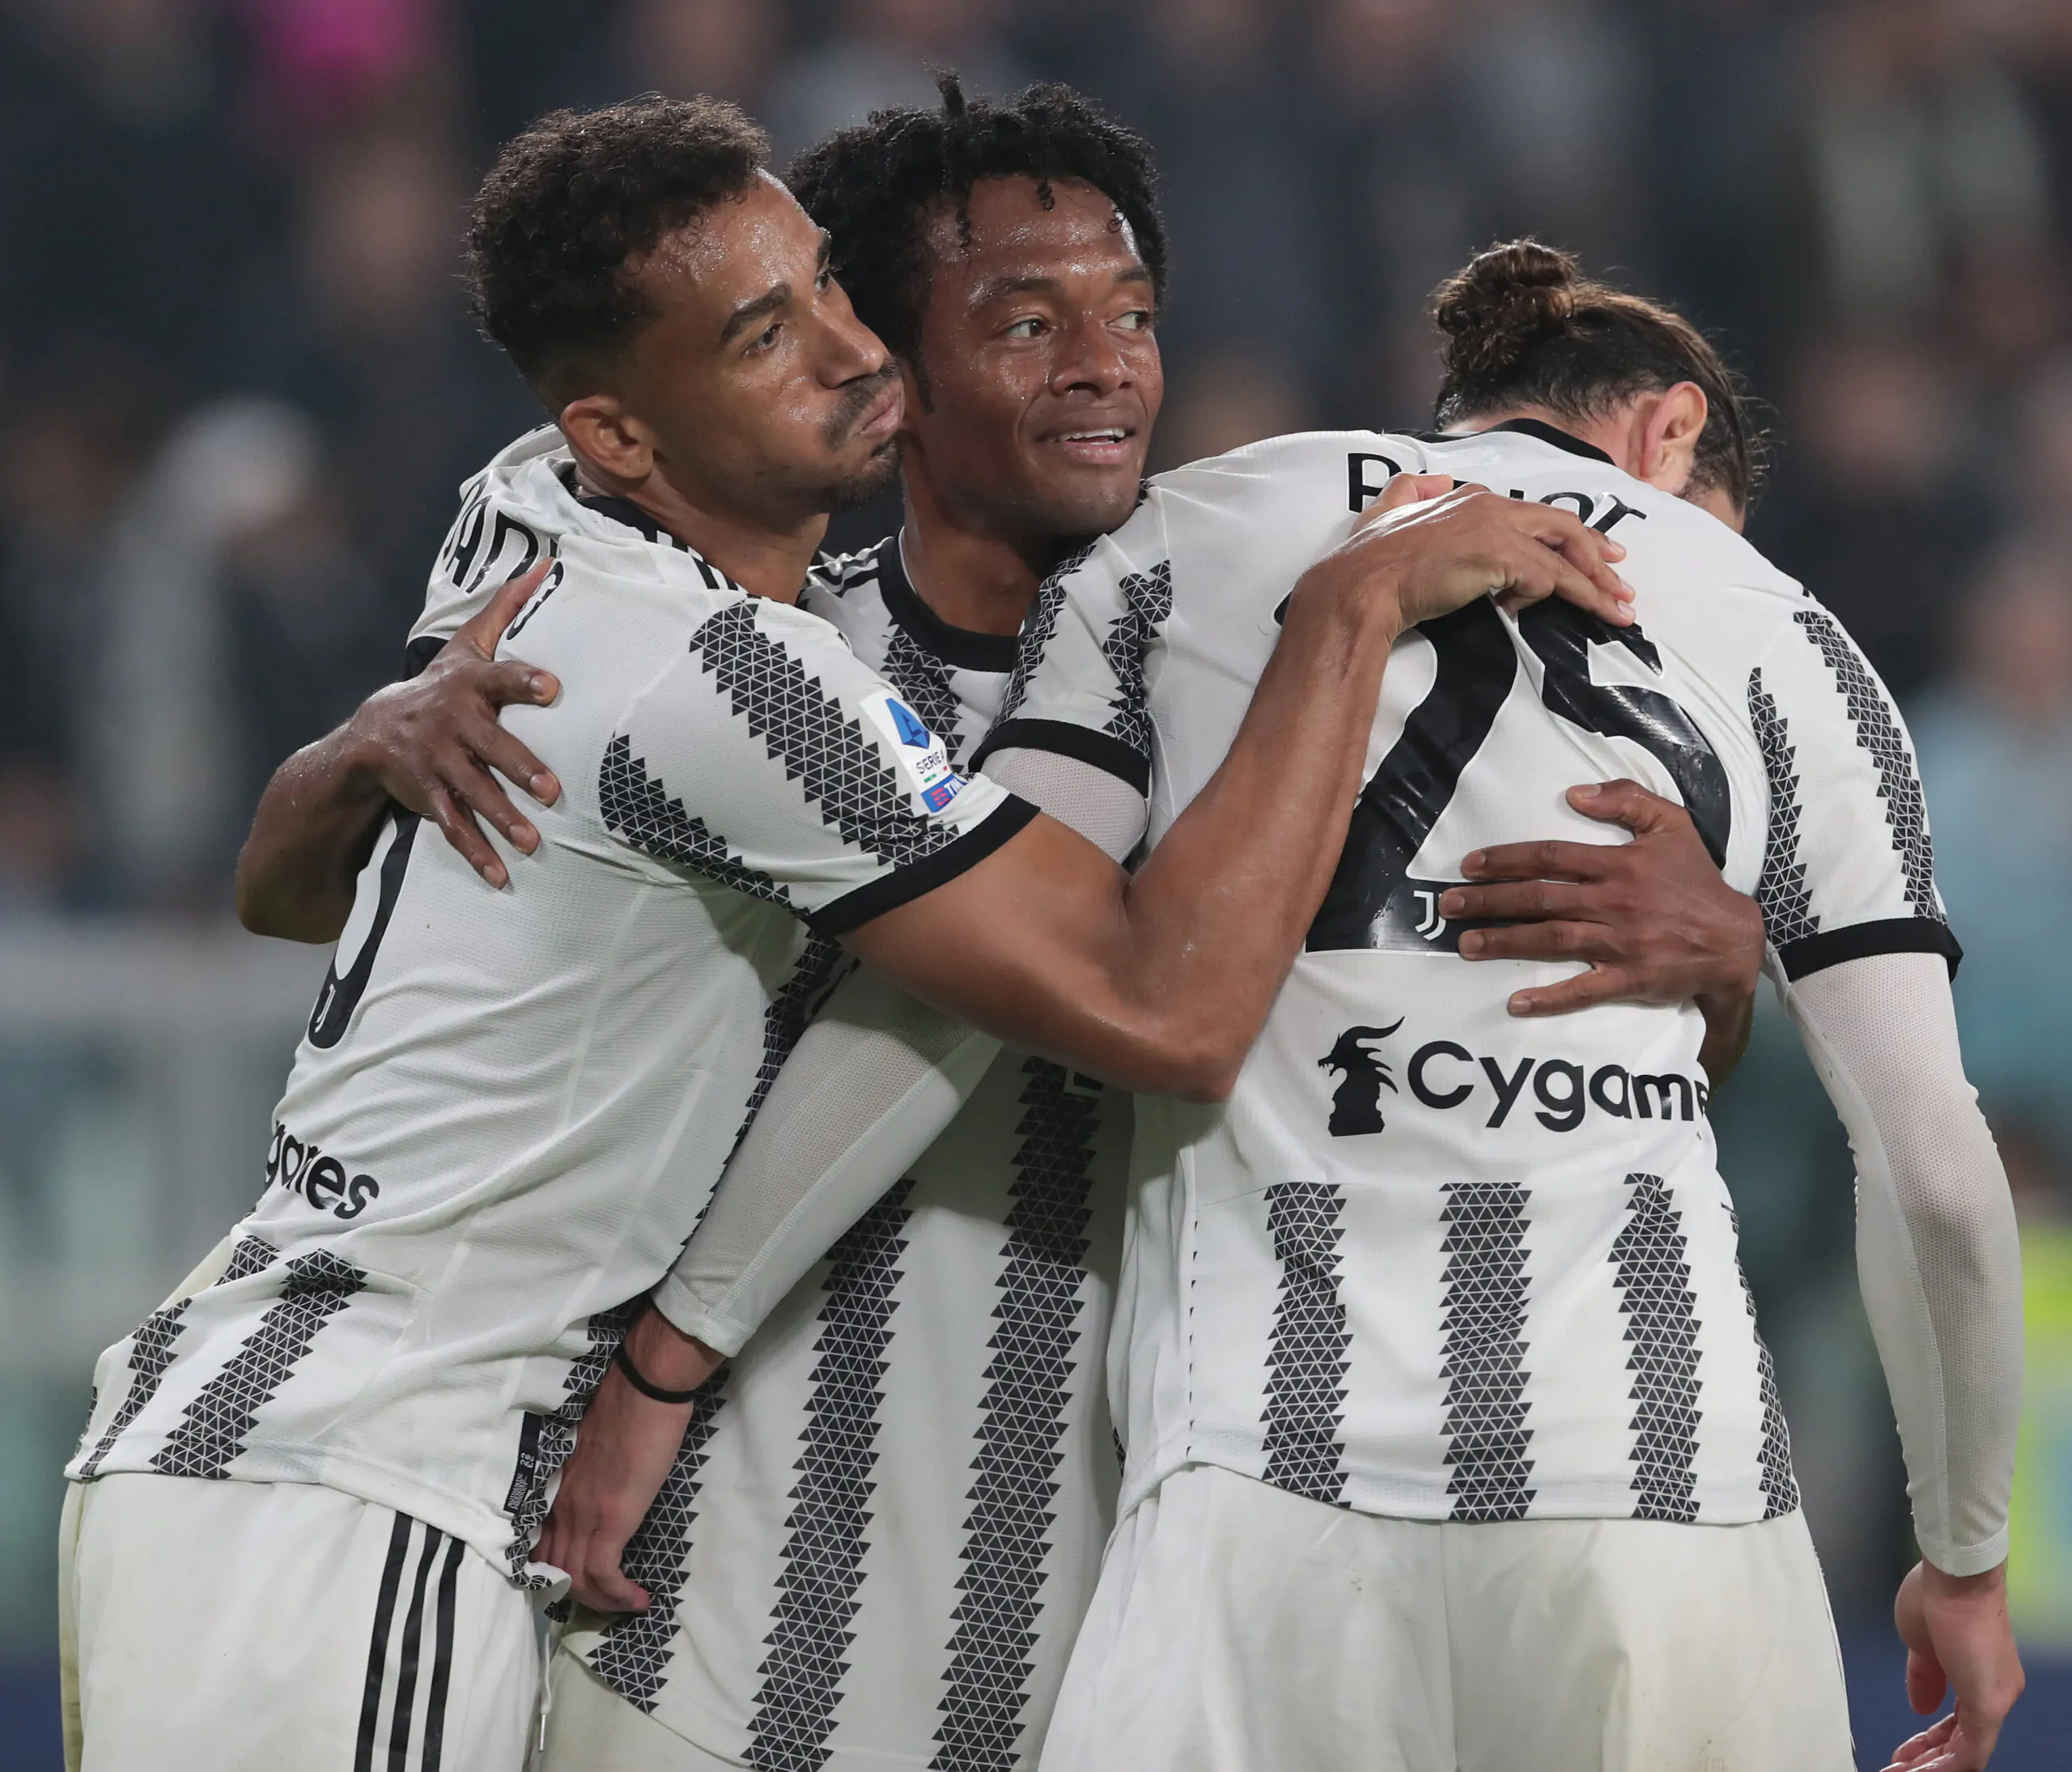 Rinnovo ad un passo con la Juventus: quando può arrivare l’annuncio